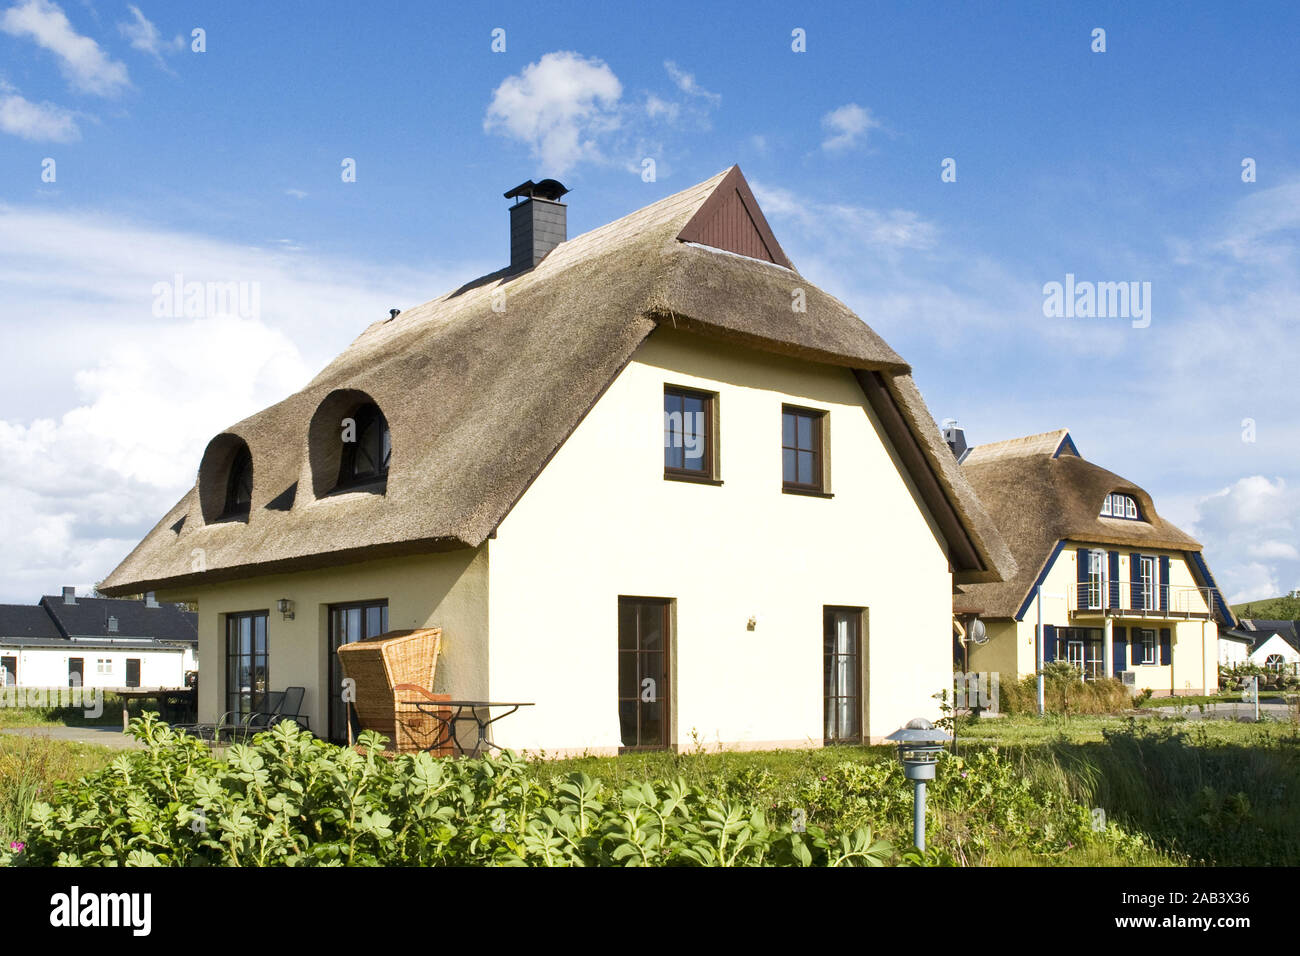 Ferienhäuser |Cottages| Stock Photo